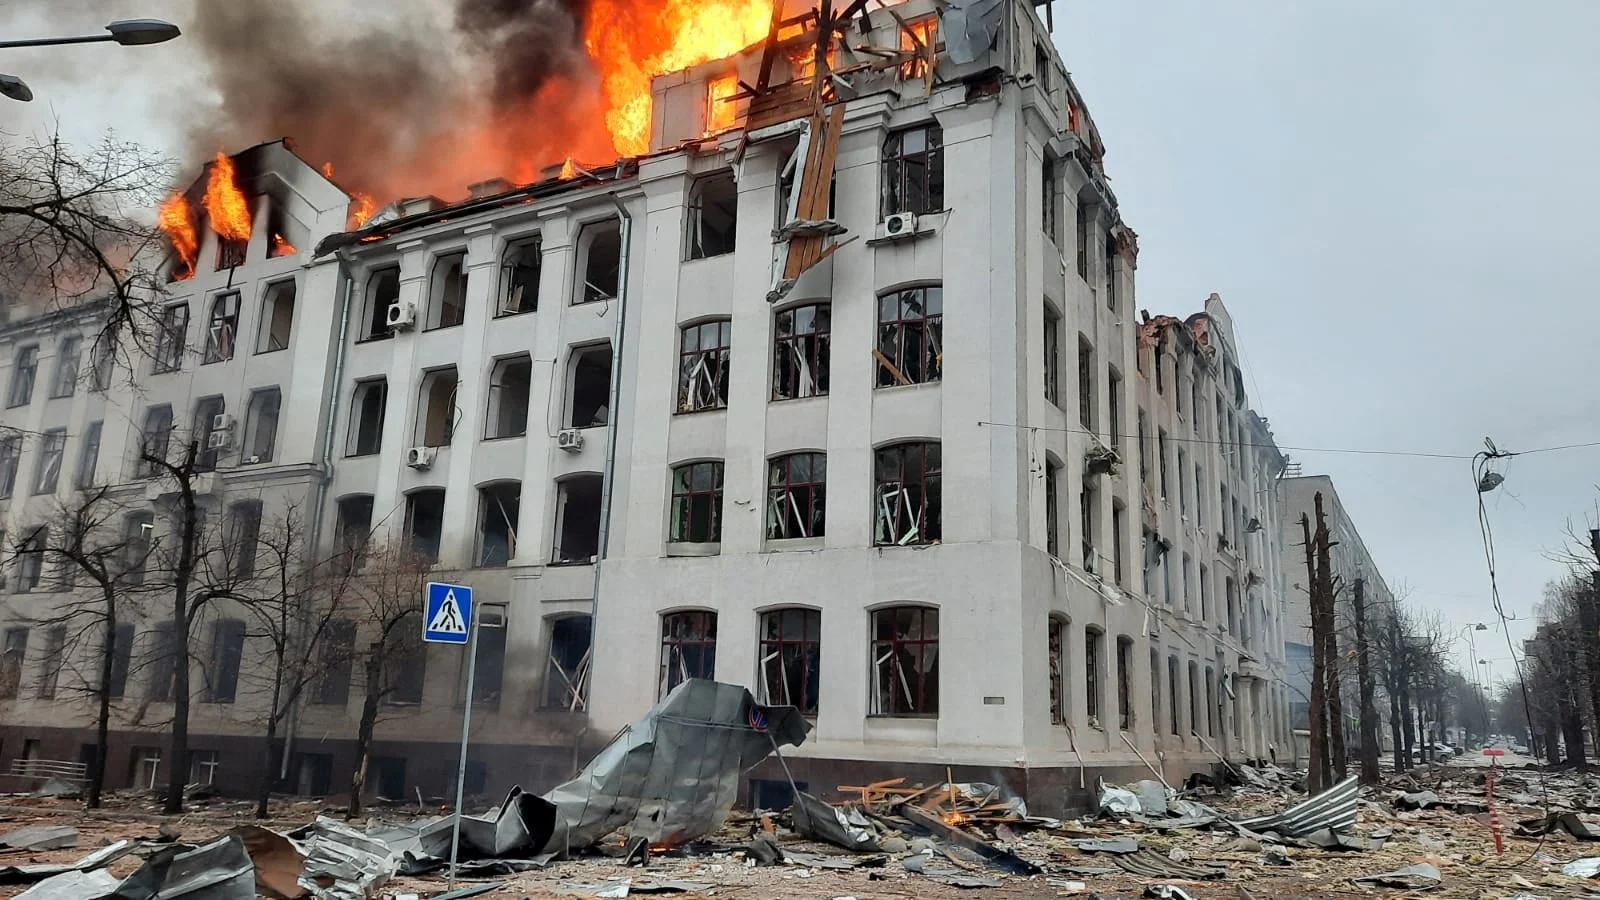 בניין שנפגע בהפגזות על חרקוב במזרח אוקראינה